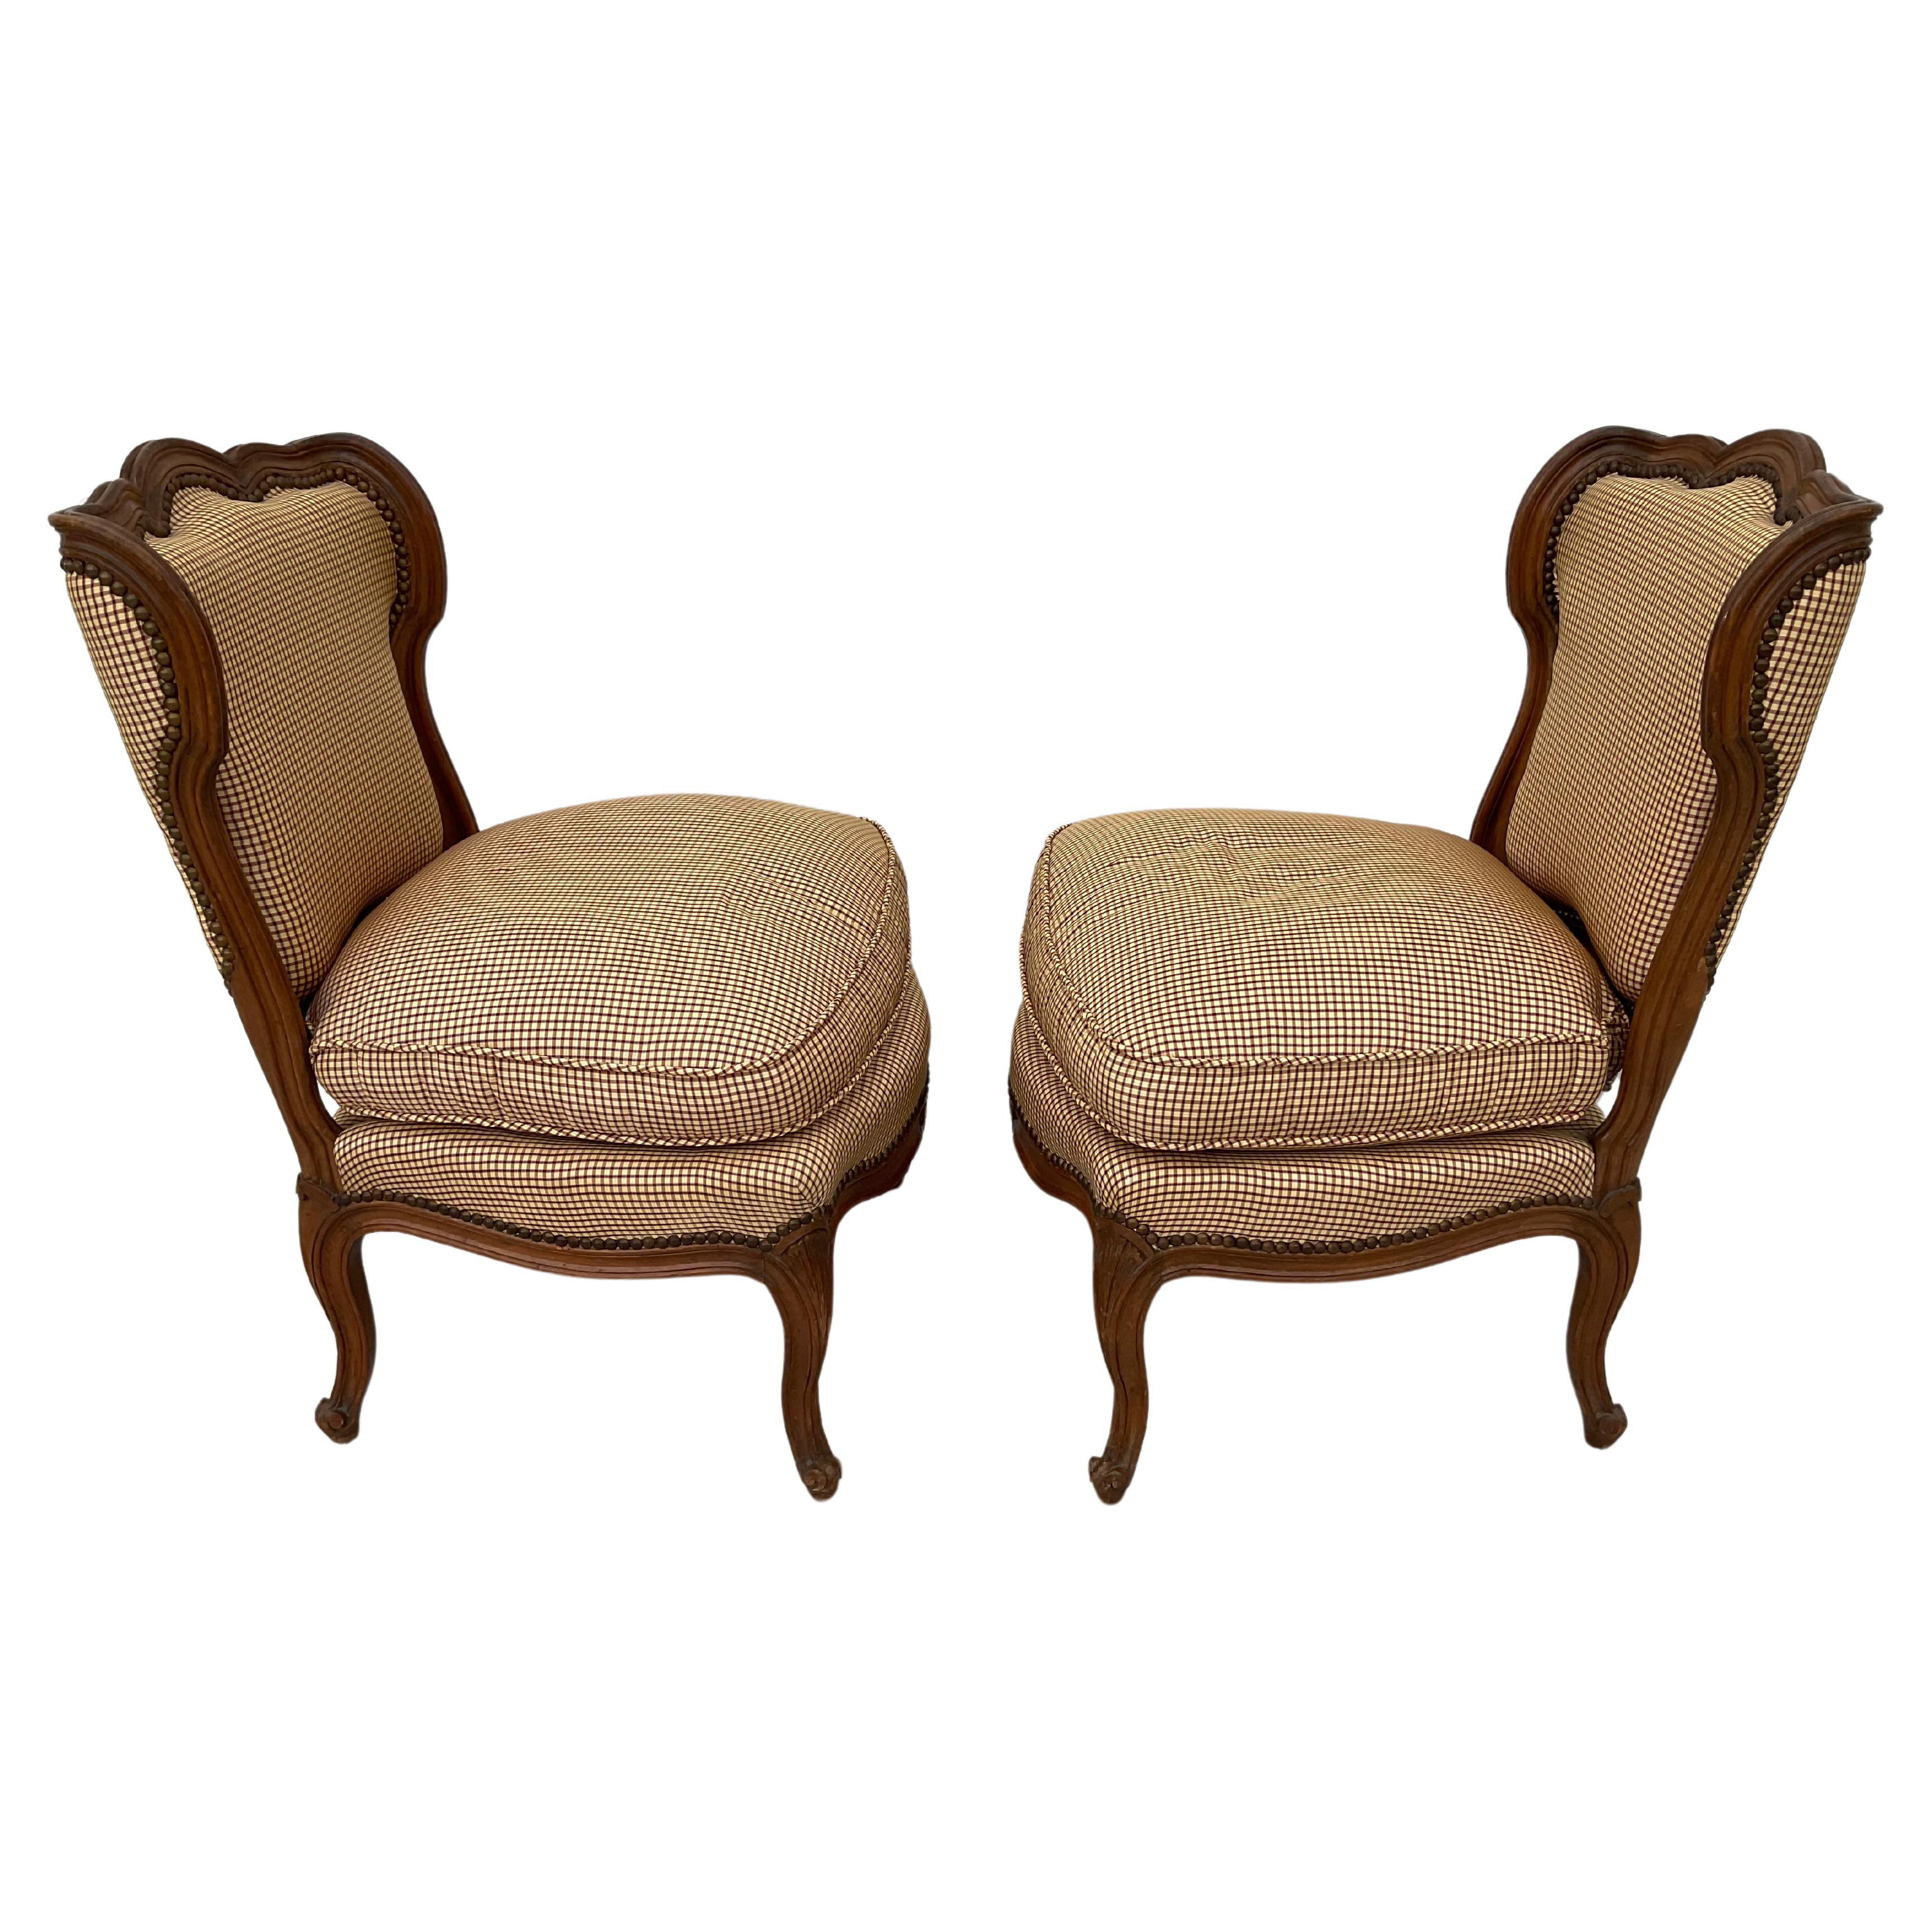 Ein Paar französische Landhausstühle mit breiten, bequemen Sitzen. Die gepolsterten Stühle haben schön geformte Rückenlehnen und stehen auf geschwungenen Cabriole-Beinen. Die Polsterung ist in einem kleinen braun-cremefarbenen Karo gehalten. Die